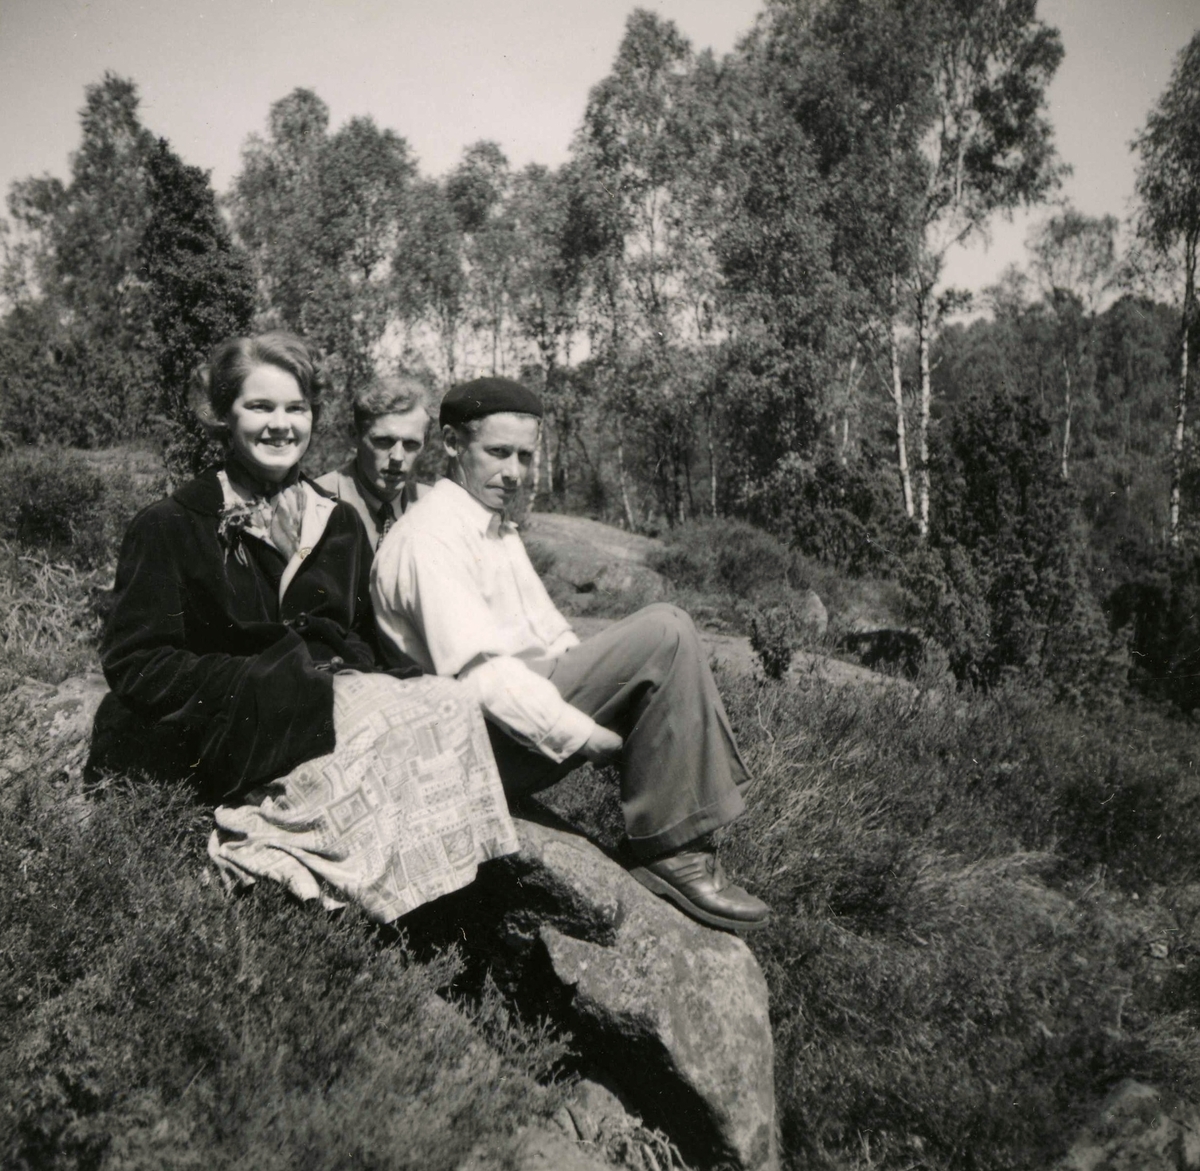 Tre personer sitter på en stenbumling vid Ekans gård, Ekan 1:1 år 1953. Från vänster: 1. Eva Svensson (född 1936, gift Johansson), Ekan. 2. Sven Erik Stenbom (1926 - 2003), Tollered. 3. (Evas far i basker) Rolf Svensson (1909 - 1989), Ekan. Tollered var en granngård till Ekan.